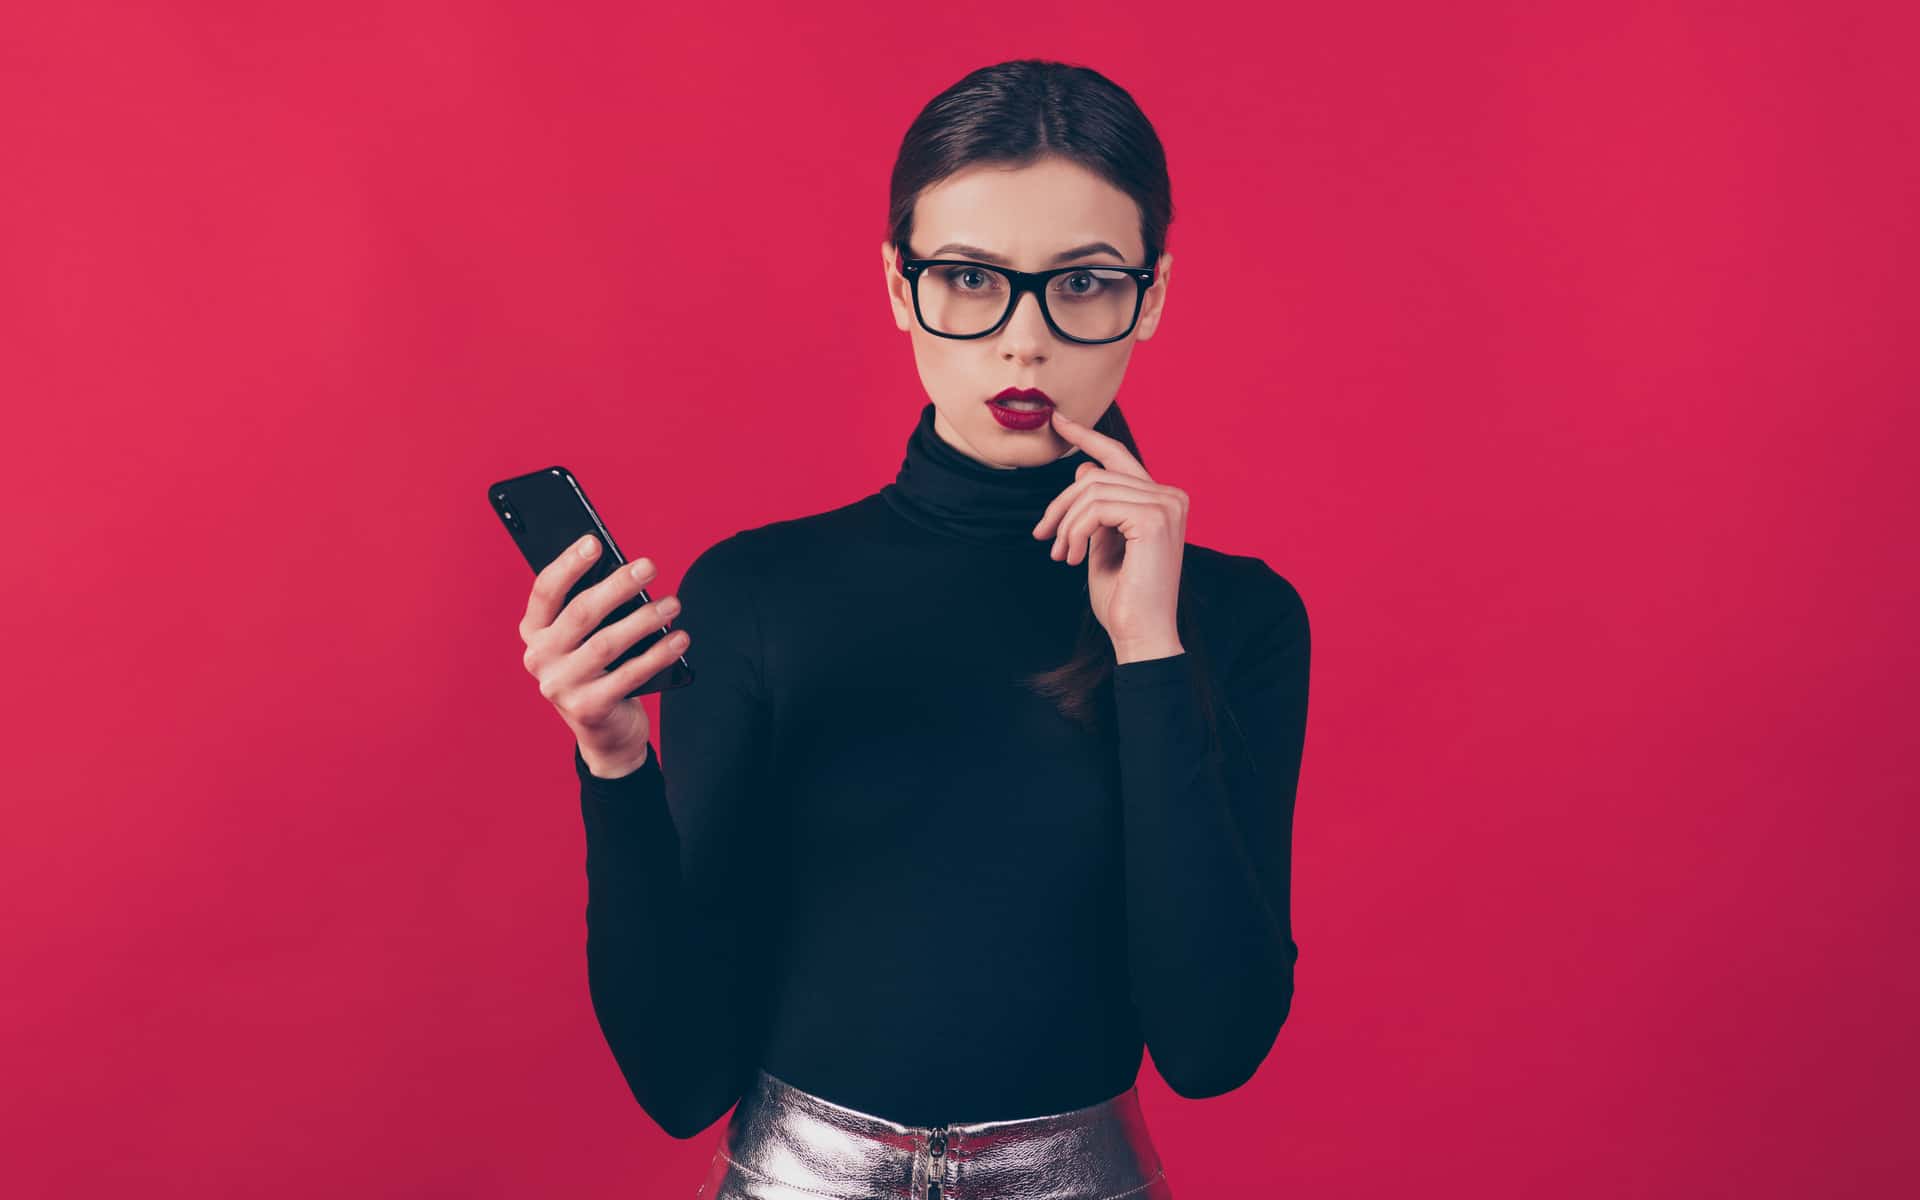 mujer joven con celular en la mano y expresión pensativa en fondo rojo